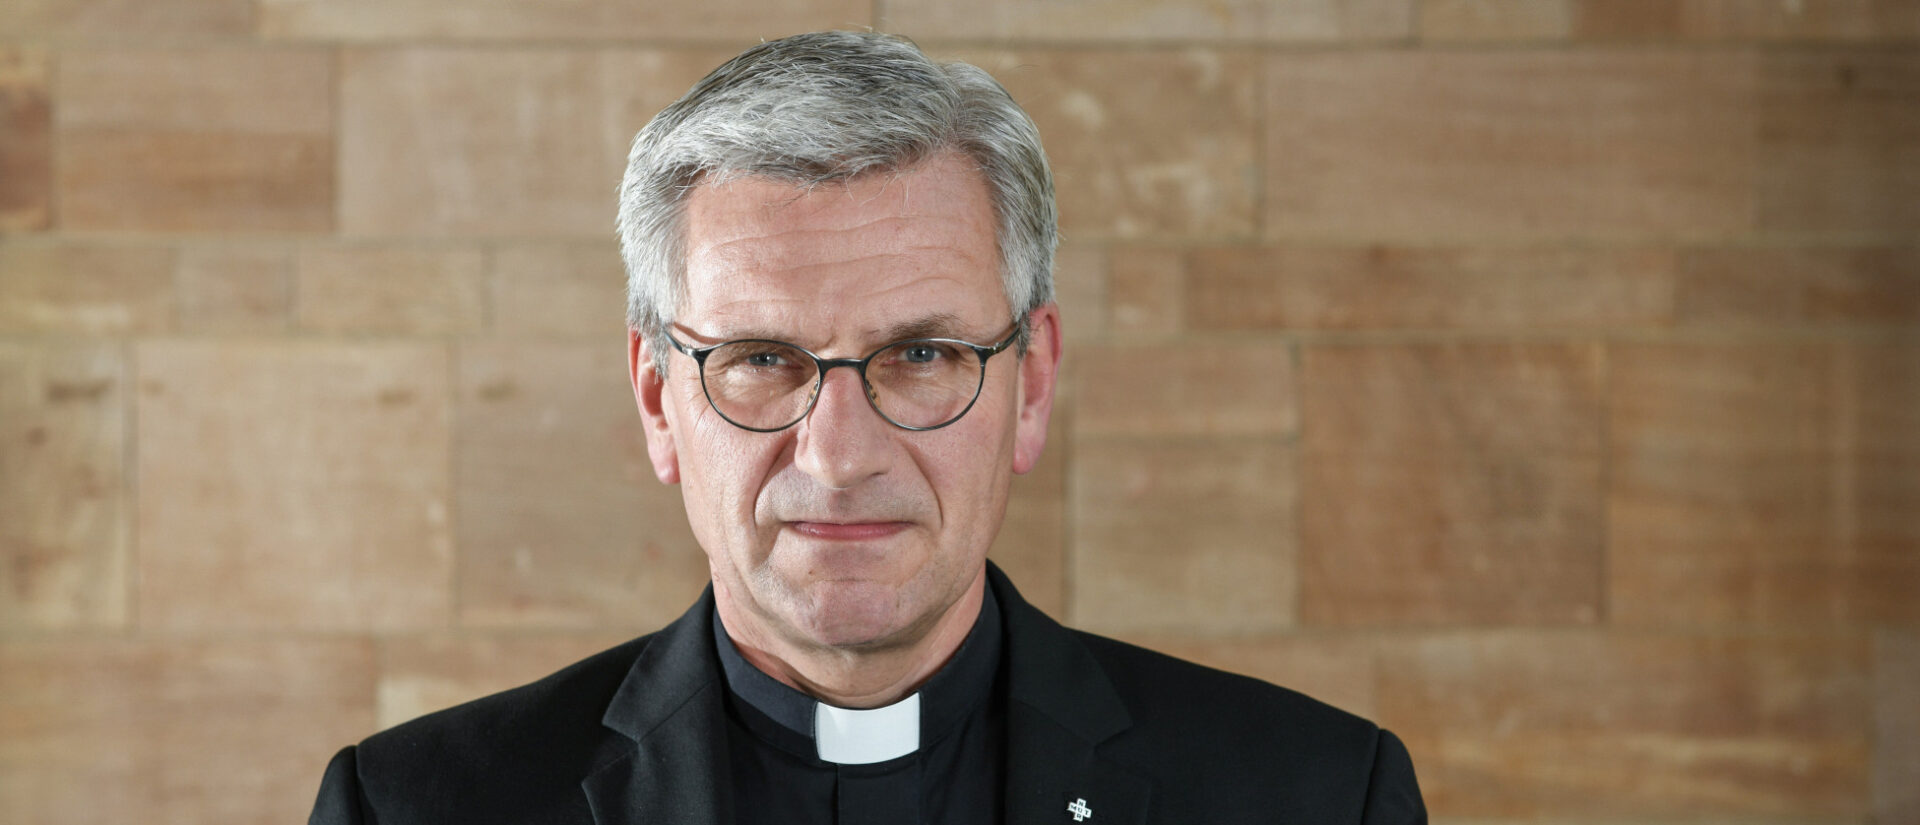 Dominikus Schwaderlapp ist Weihbischof in Köln.